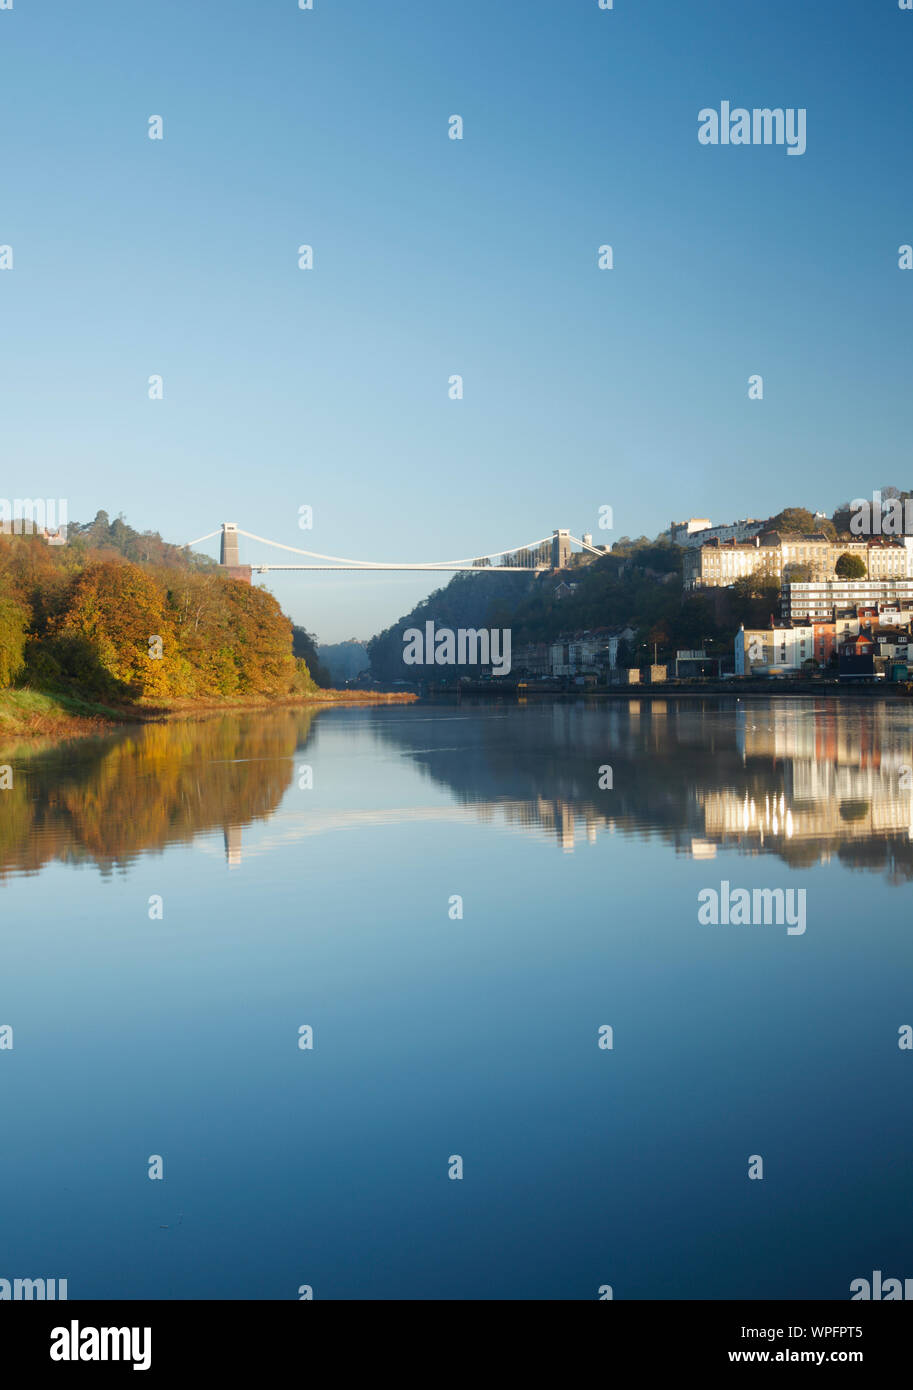 Pont suspendu de Clifton et de condensats chauds reflète dans la rivière Avon. Bristol. UK. Banque D'Images